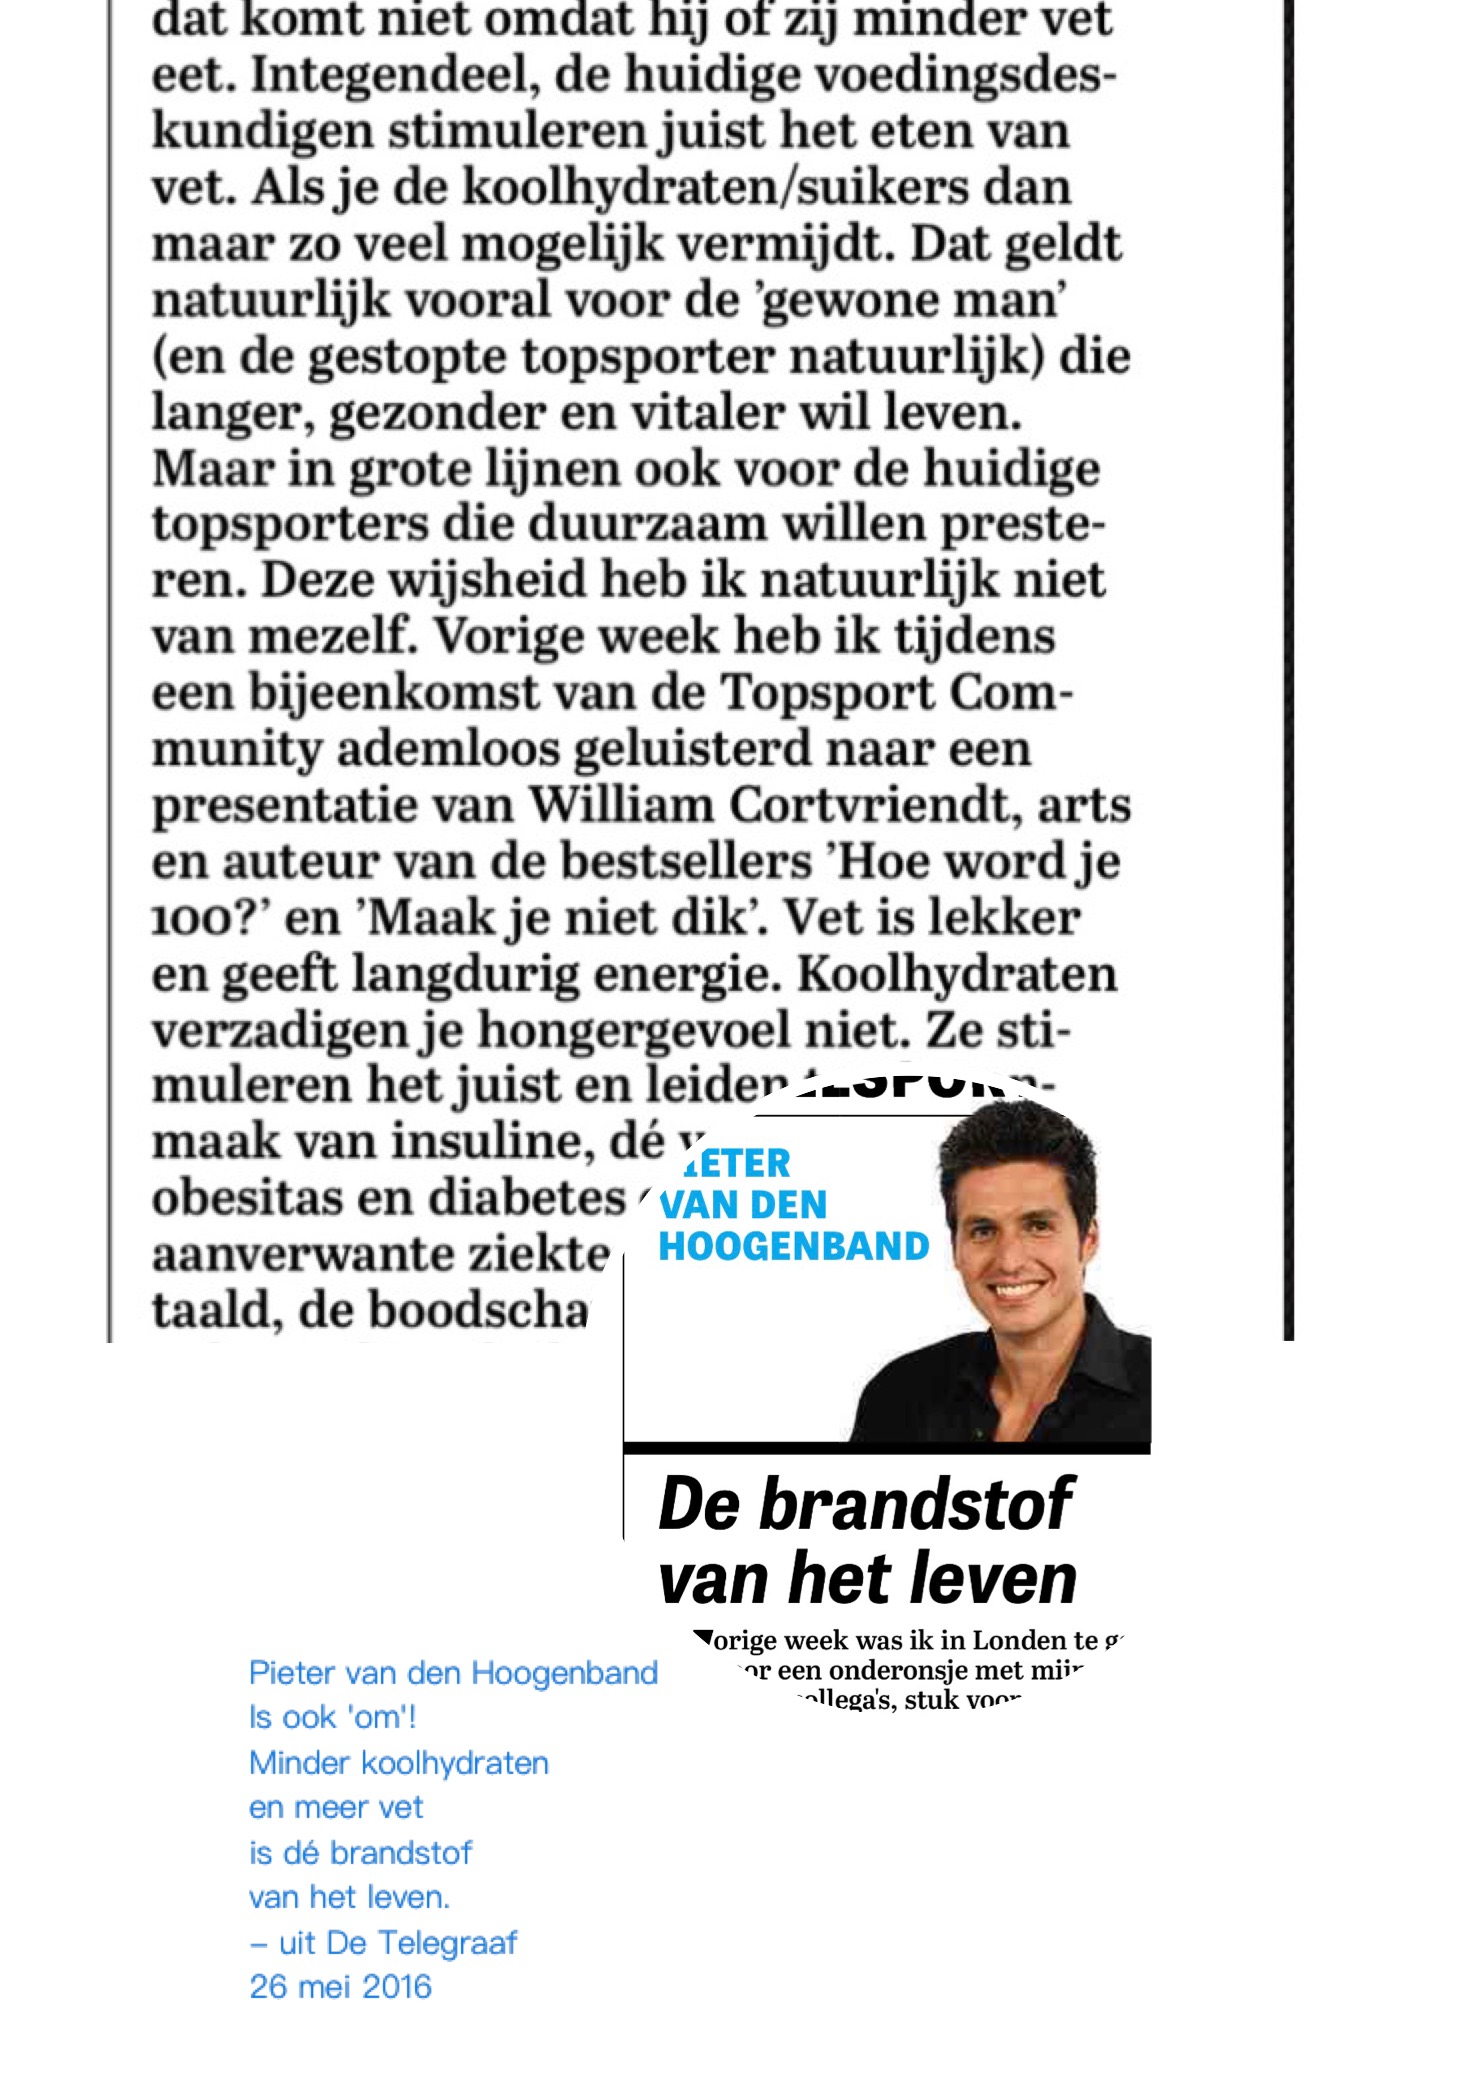 Pieter van den Hoogenband eet minder koolhydraten!